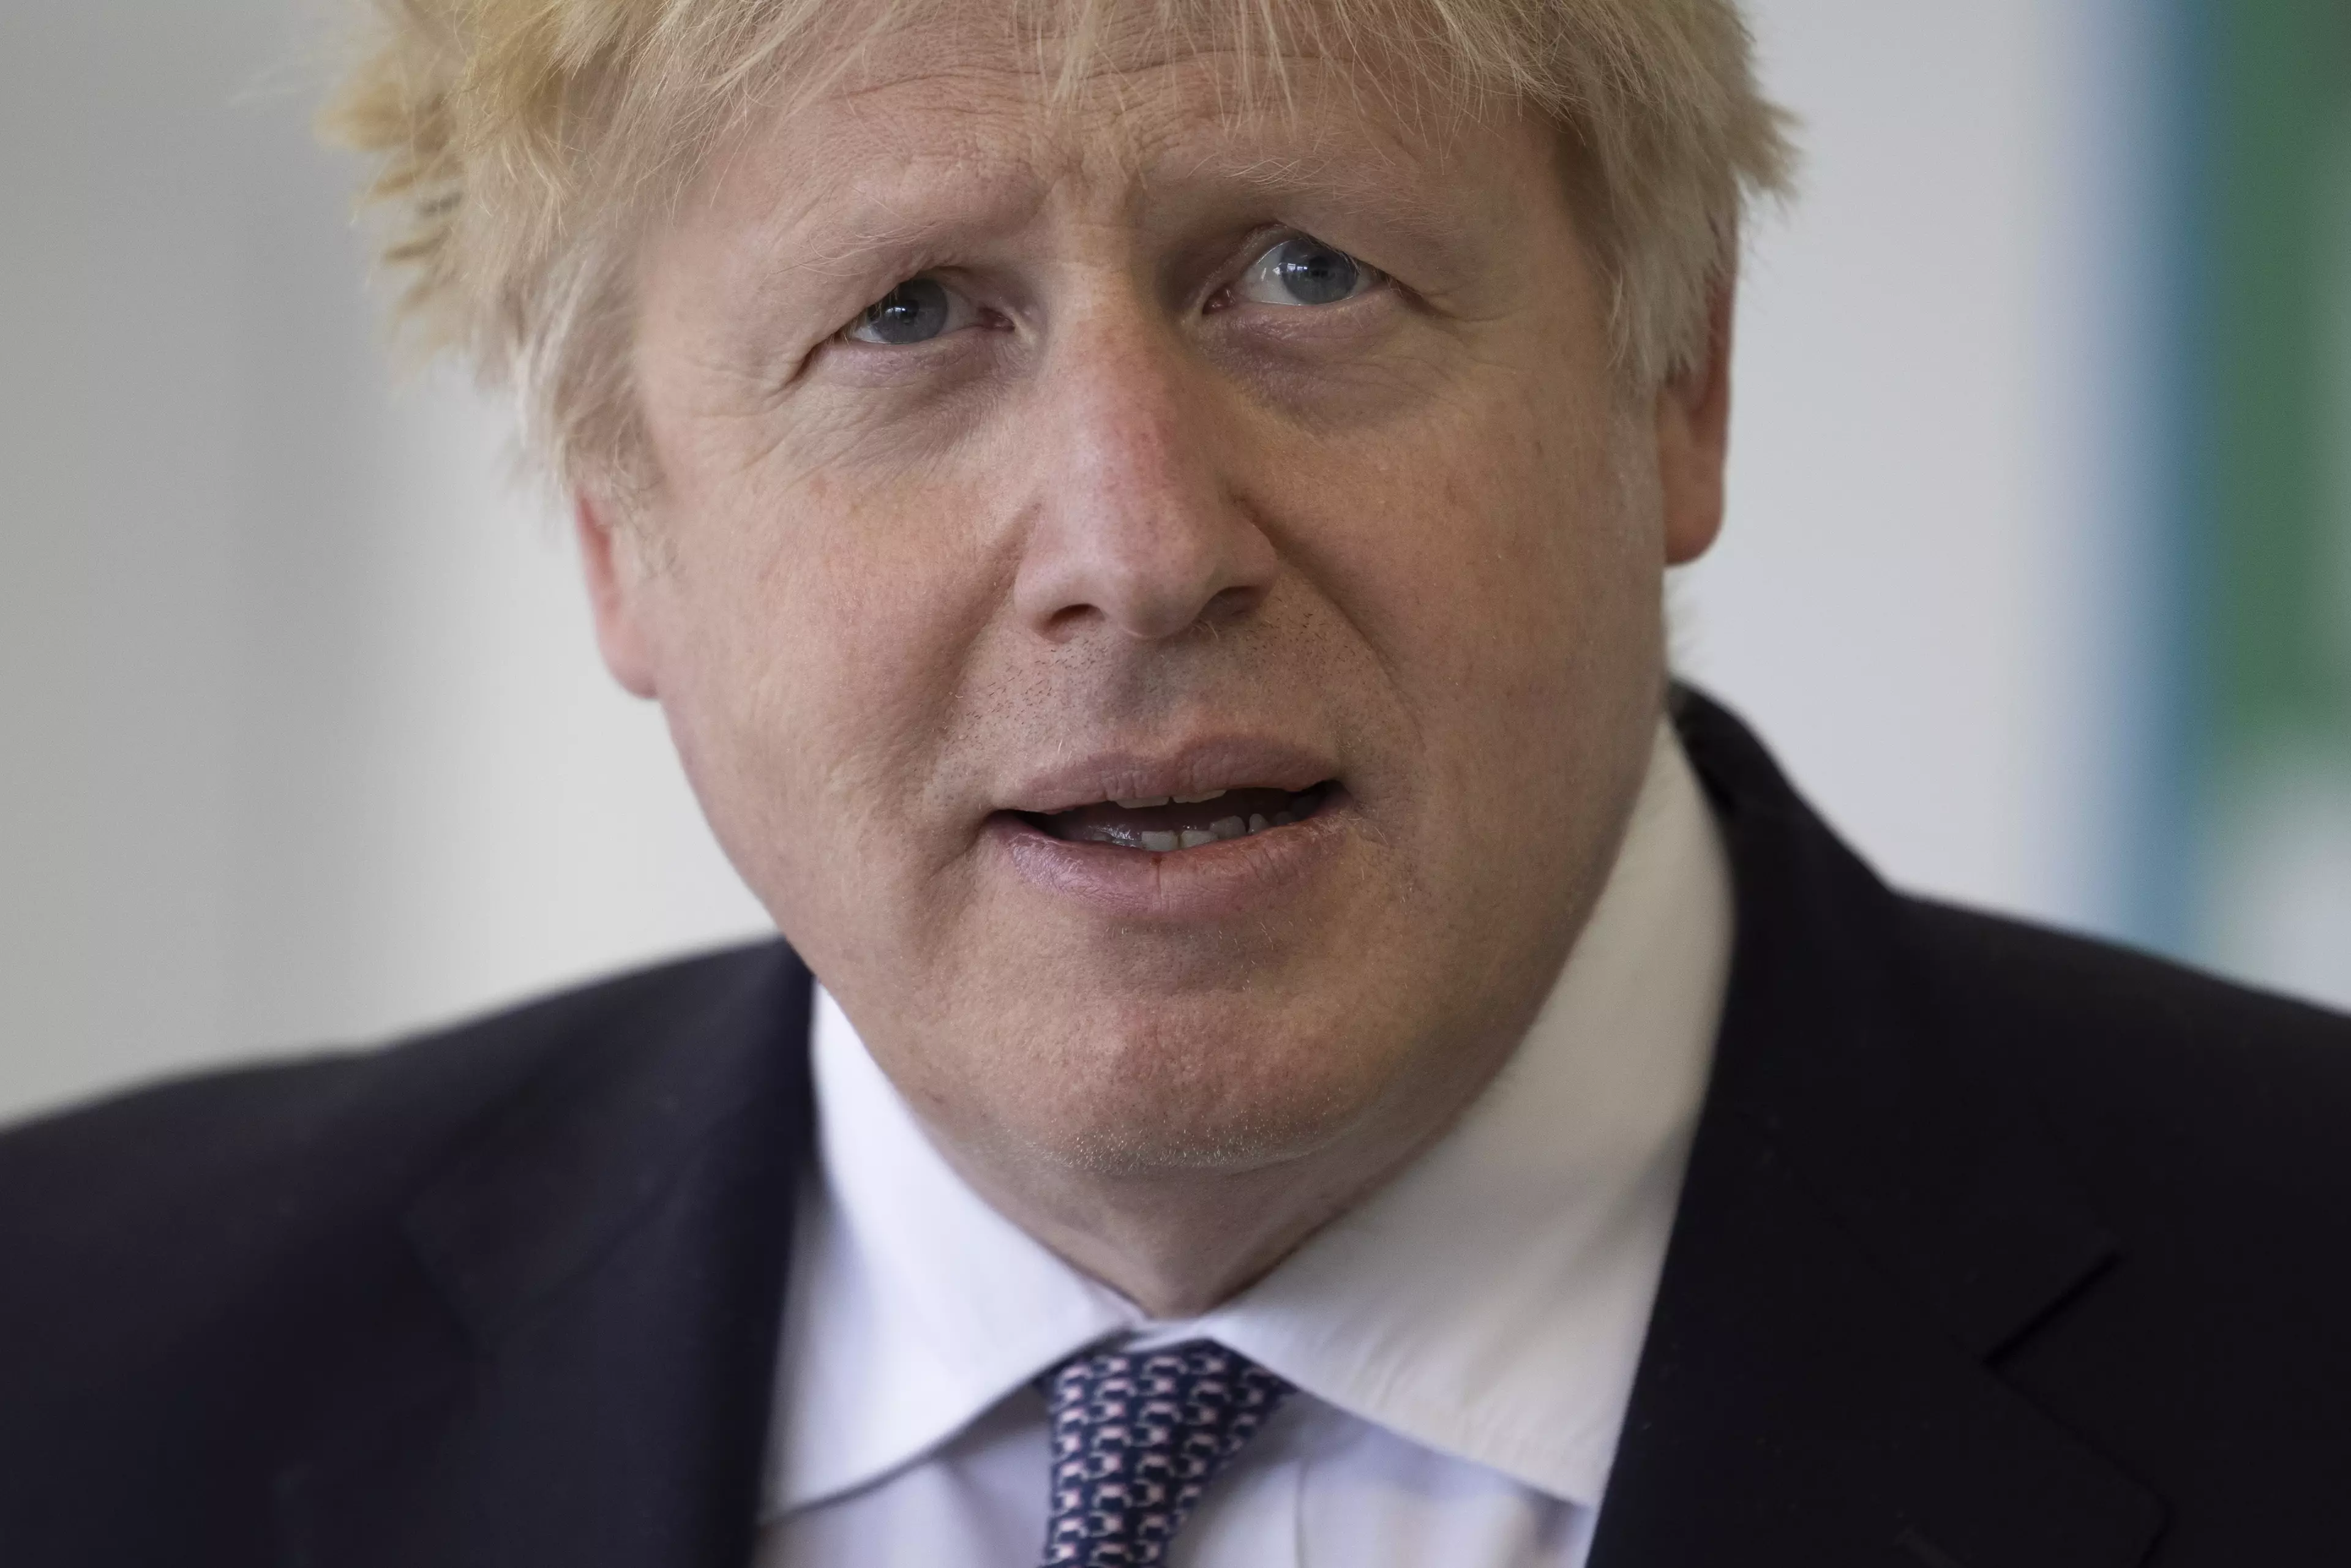 Boris Johnson said a cautious approach is needed (